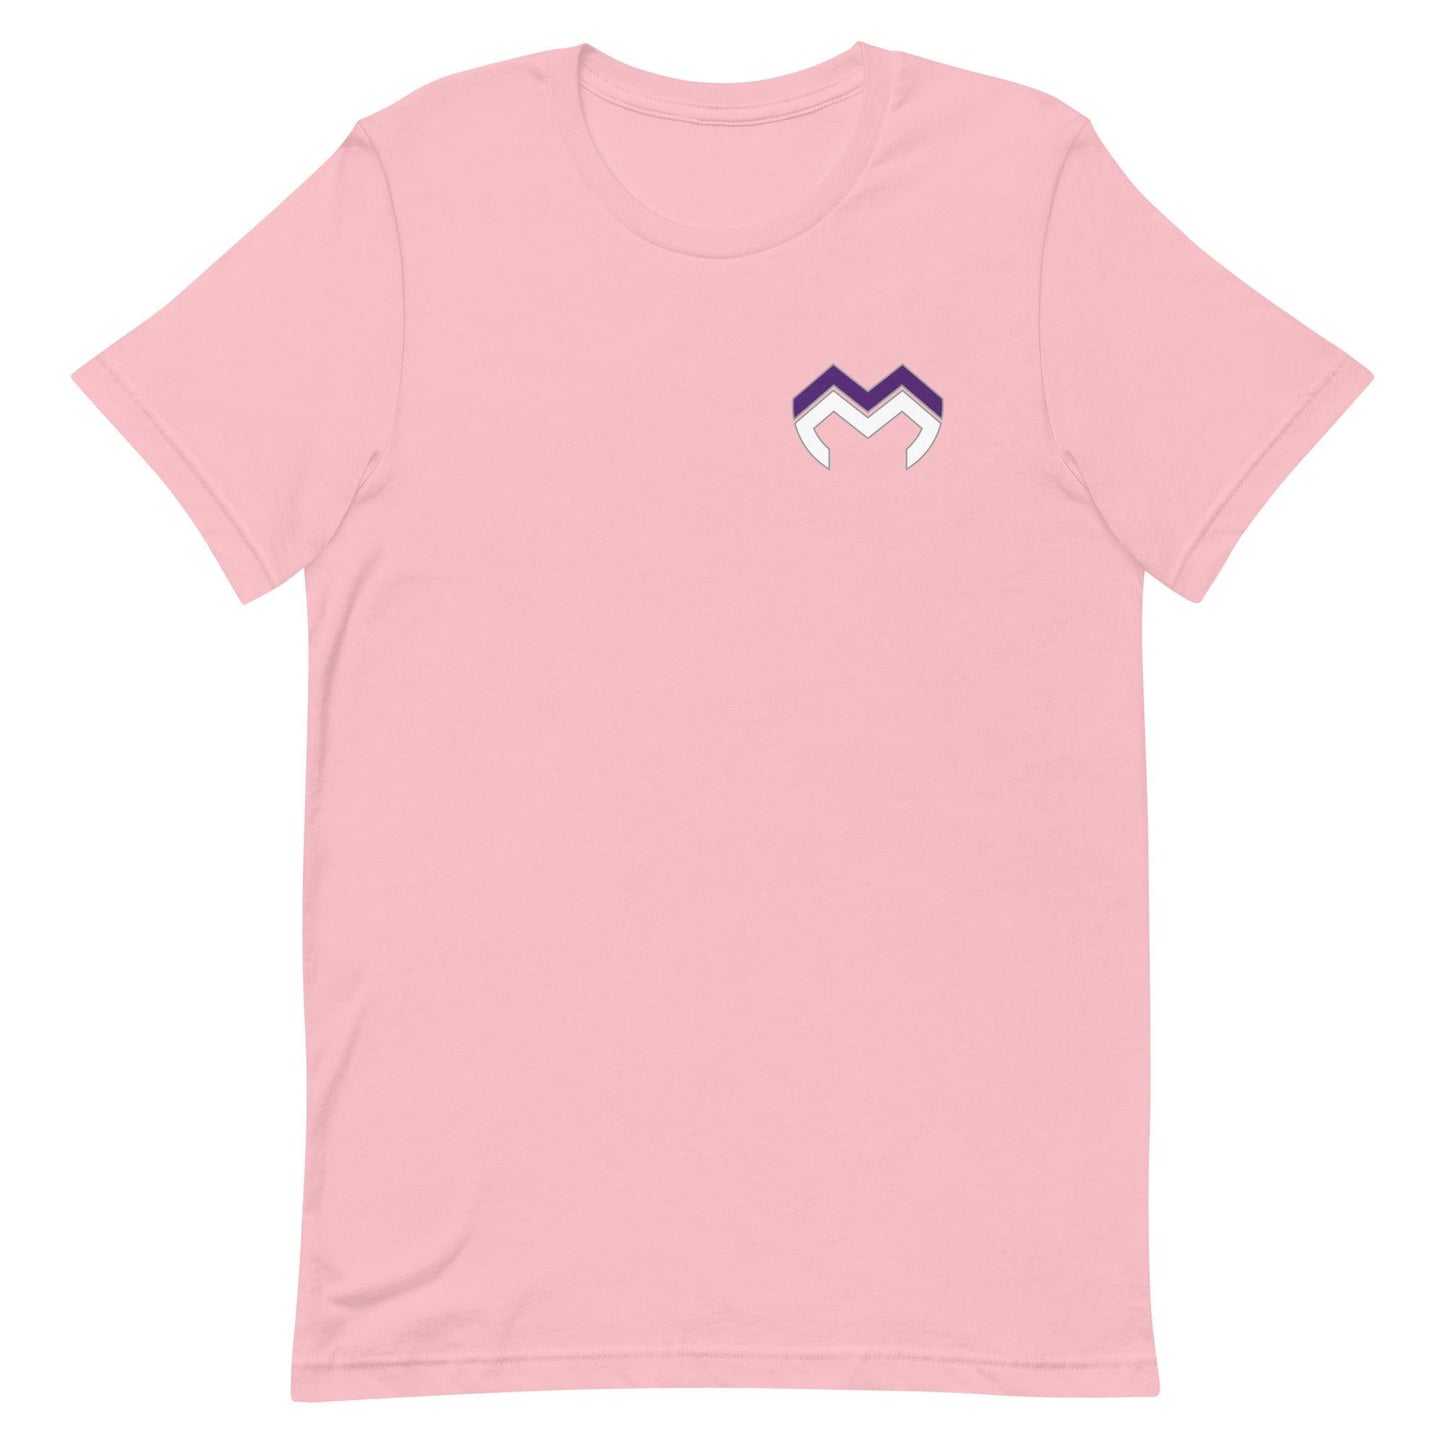 Maverick McIvor "Essential" t-shirt - Fan Arch